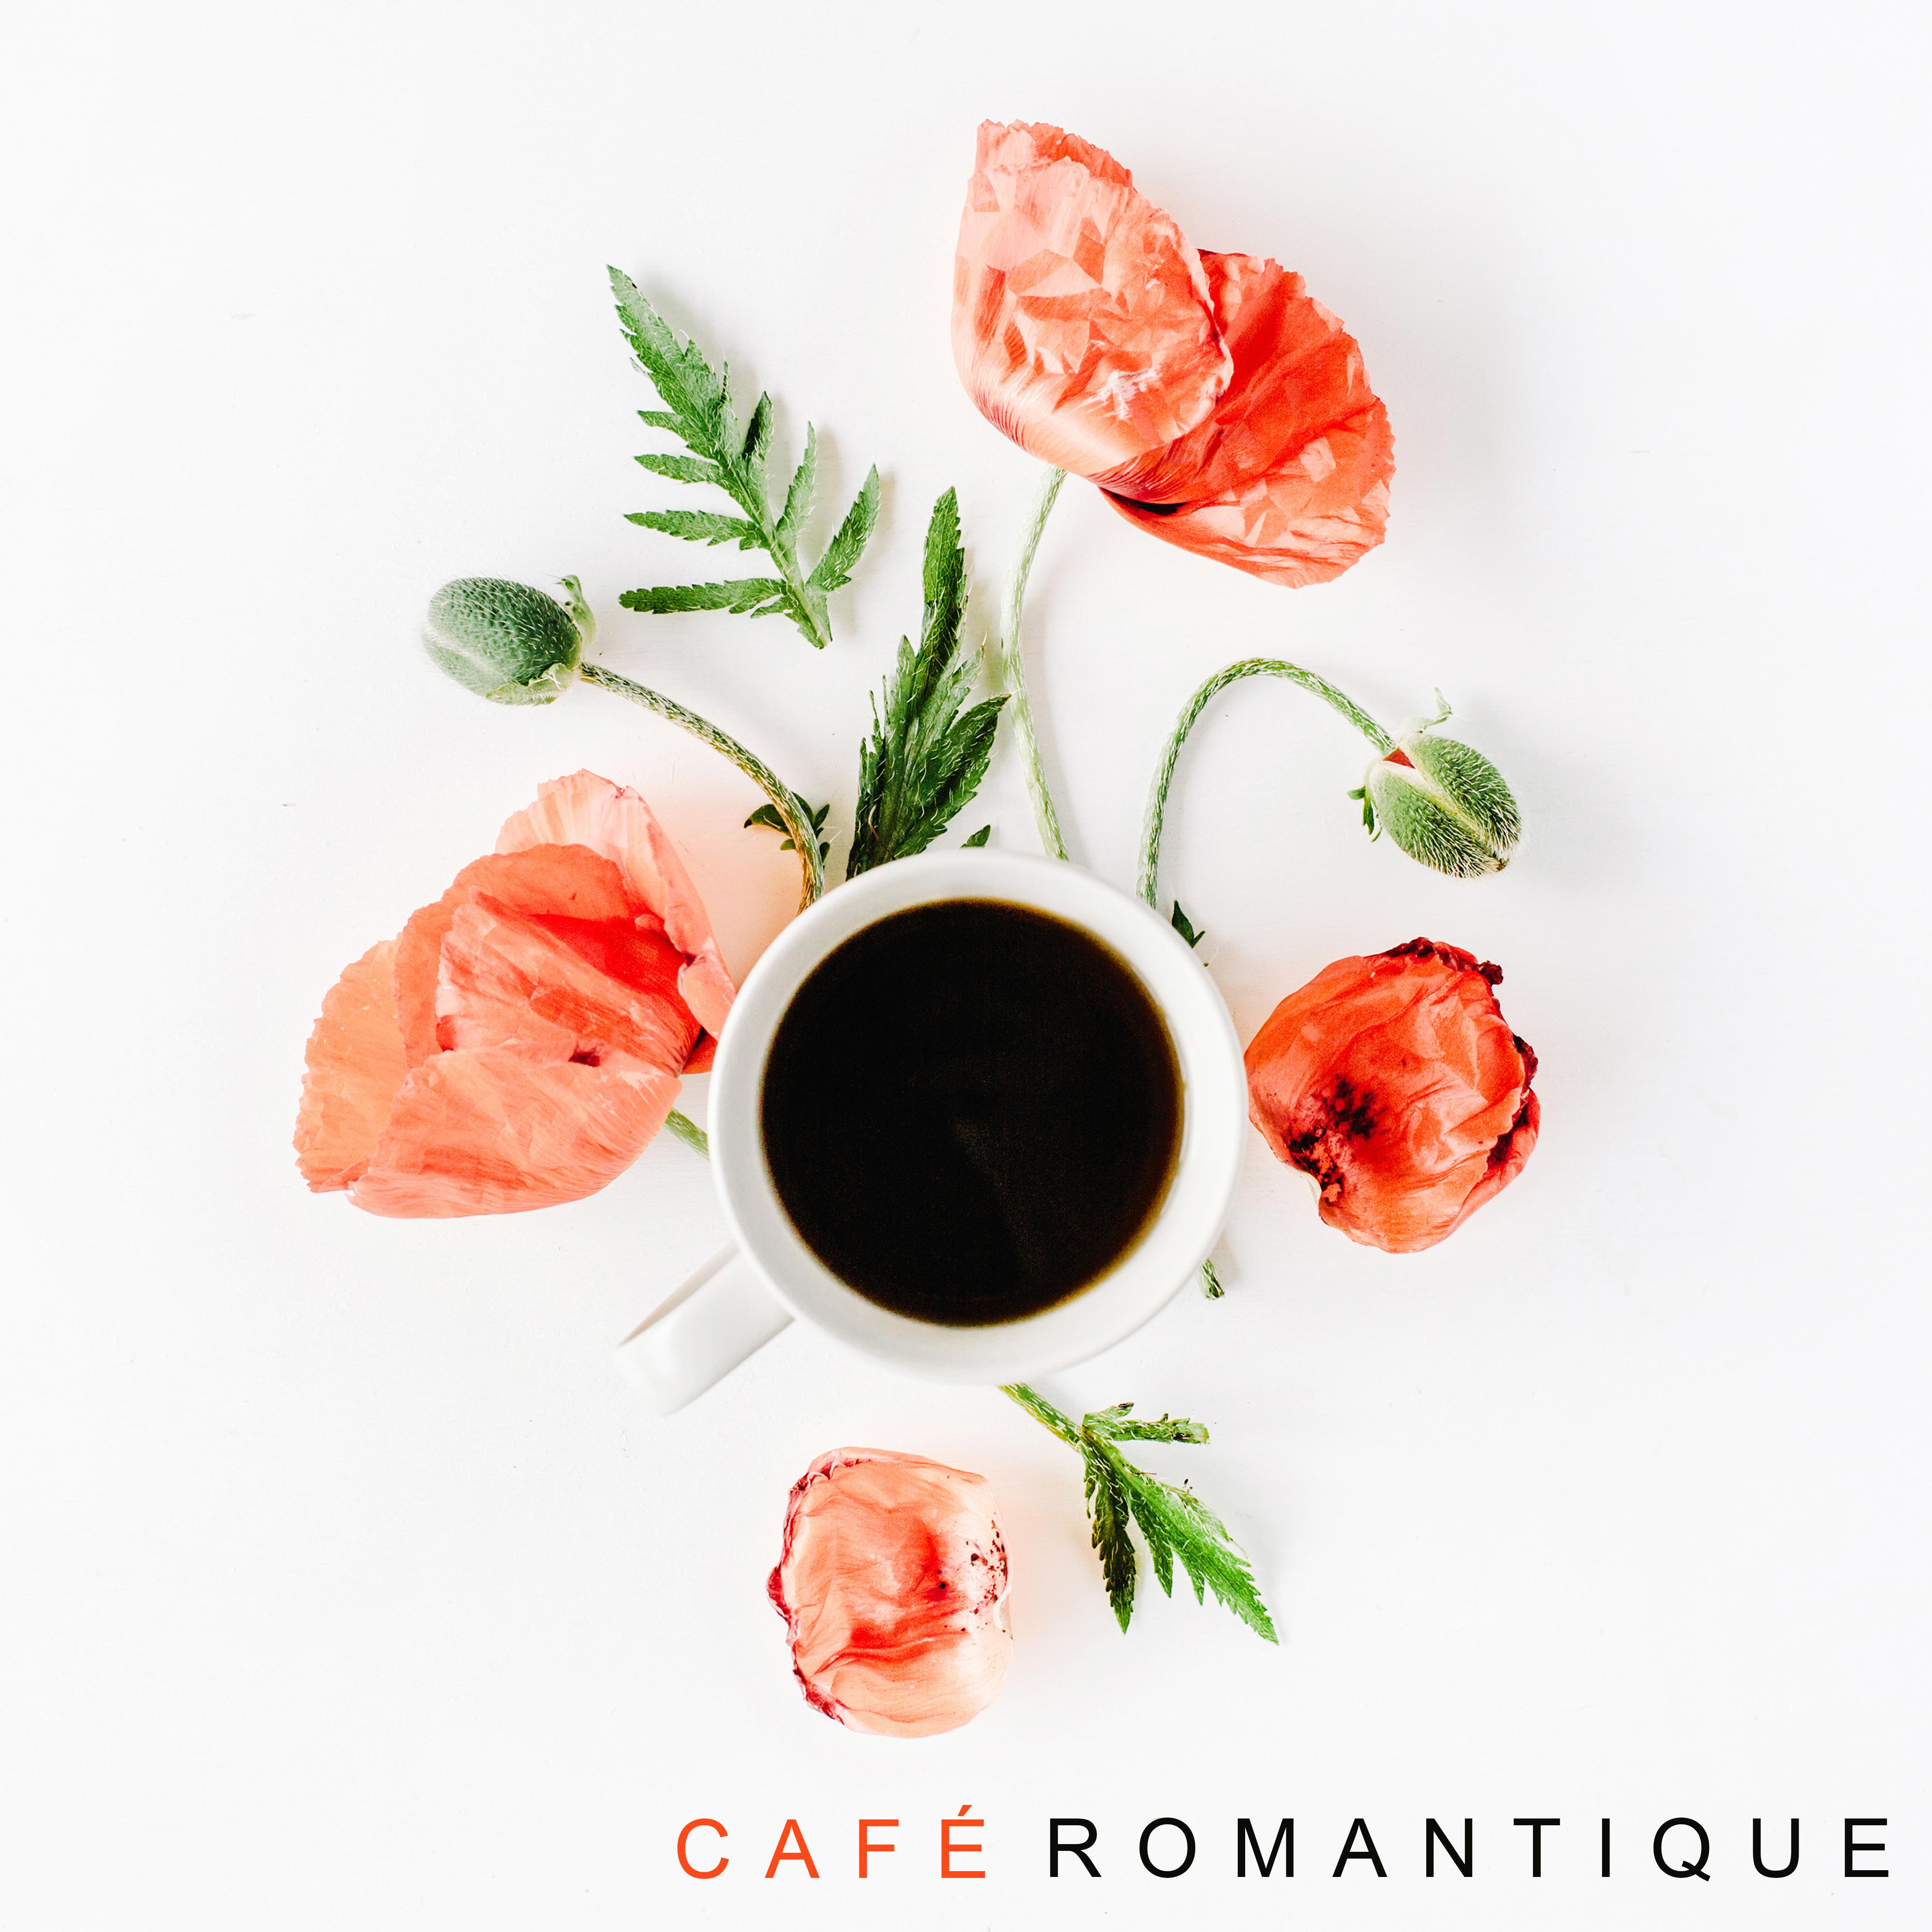 Cafe romantique: Sons instrumentaux pour les amoureux, Jazz ambiant